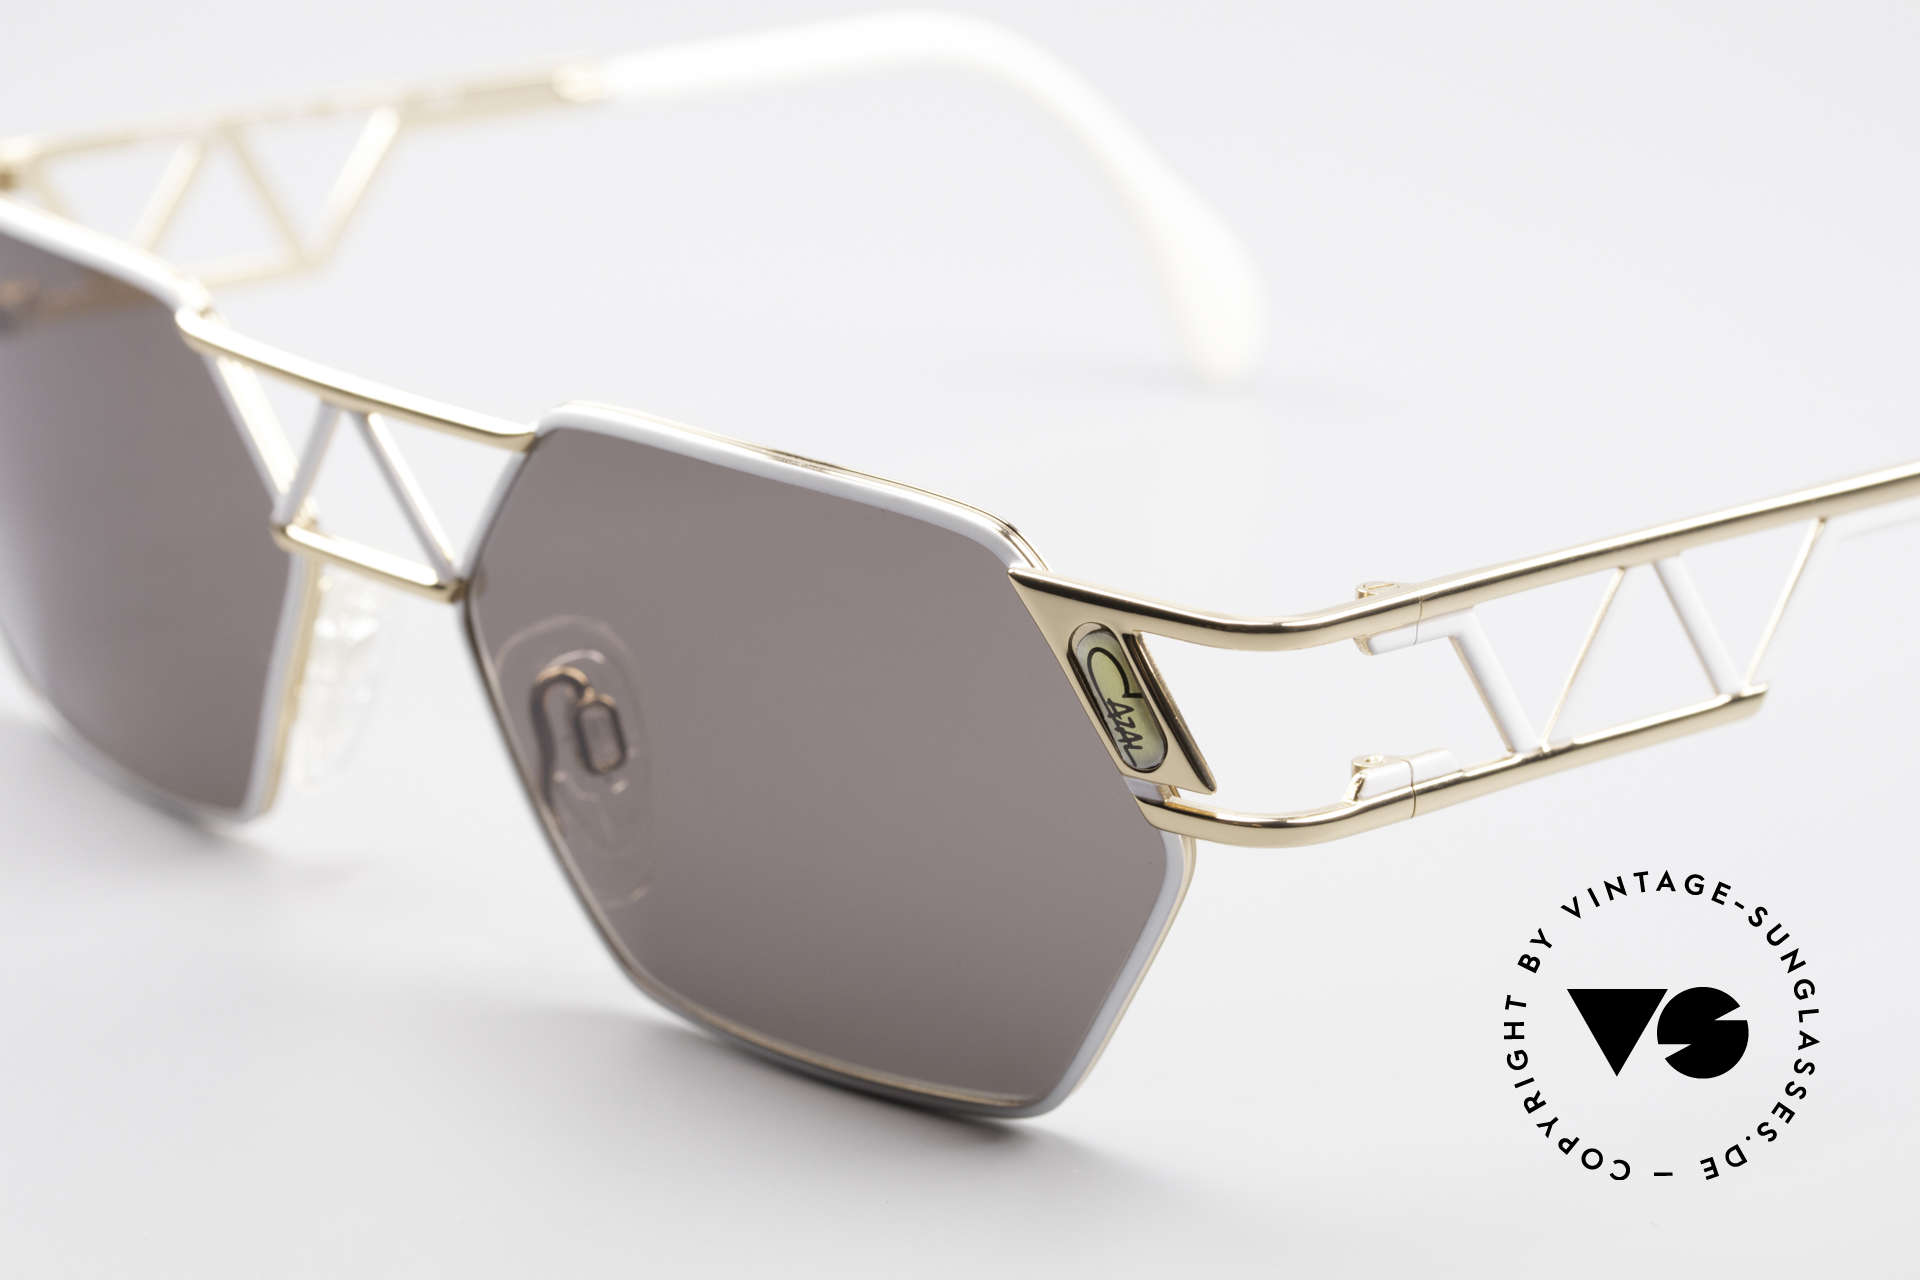 Cazal 960 Echte Designer Sonnenbrille, orig. Cazal Gläser mit UV PROTECTION Markierung, Passend für Herren und Damen